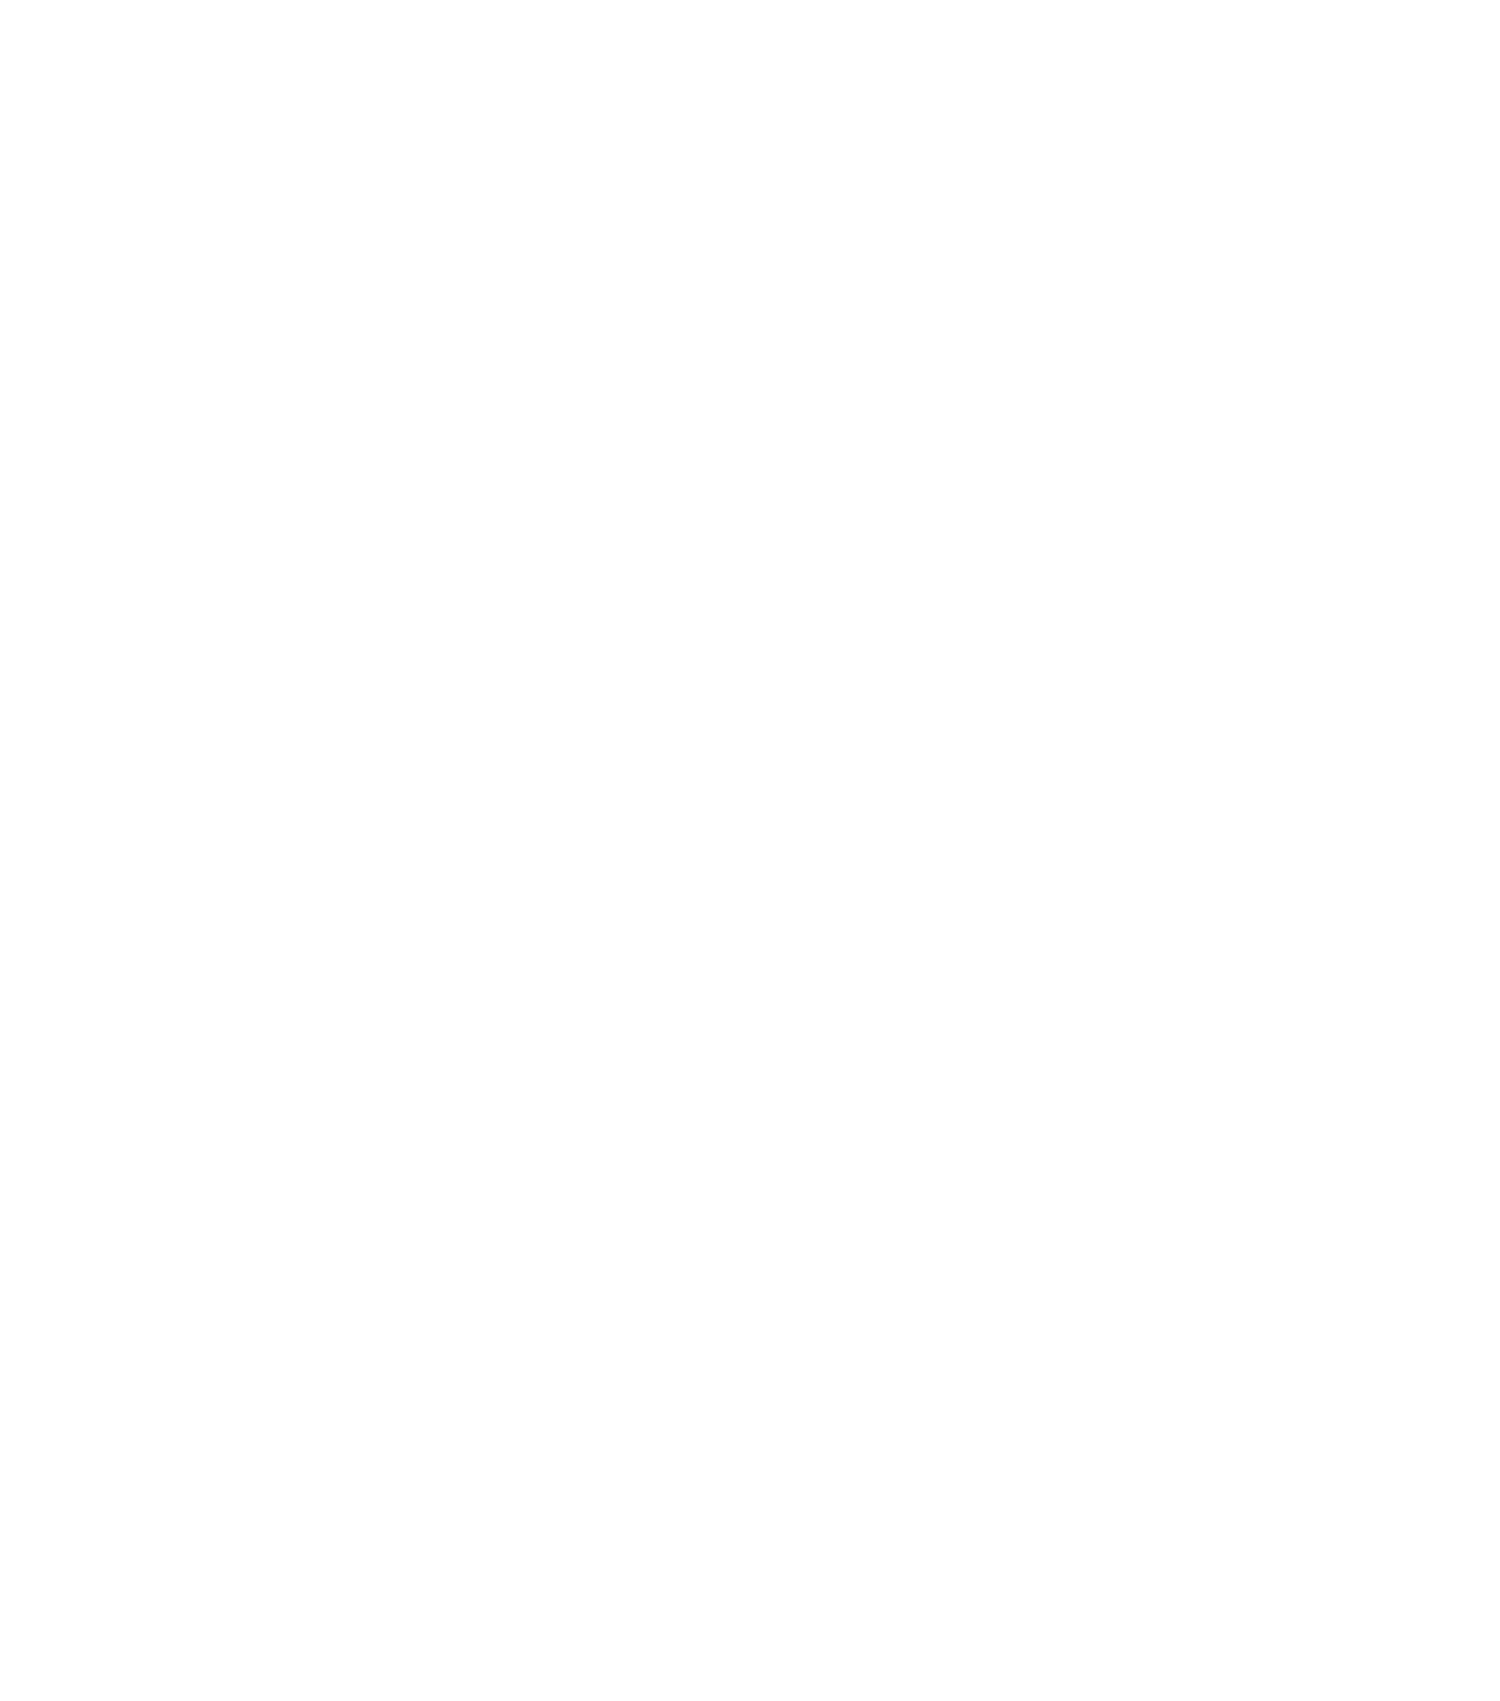  Dry Lake Brewing